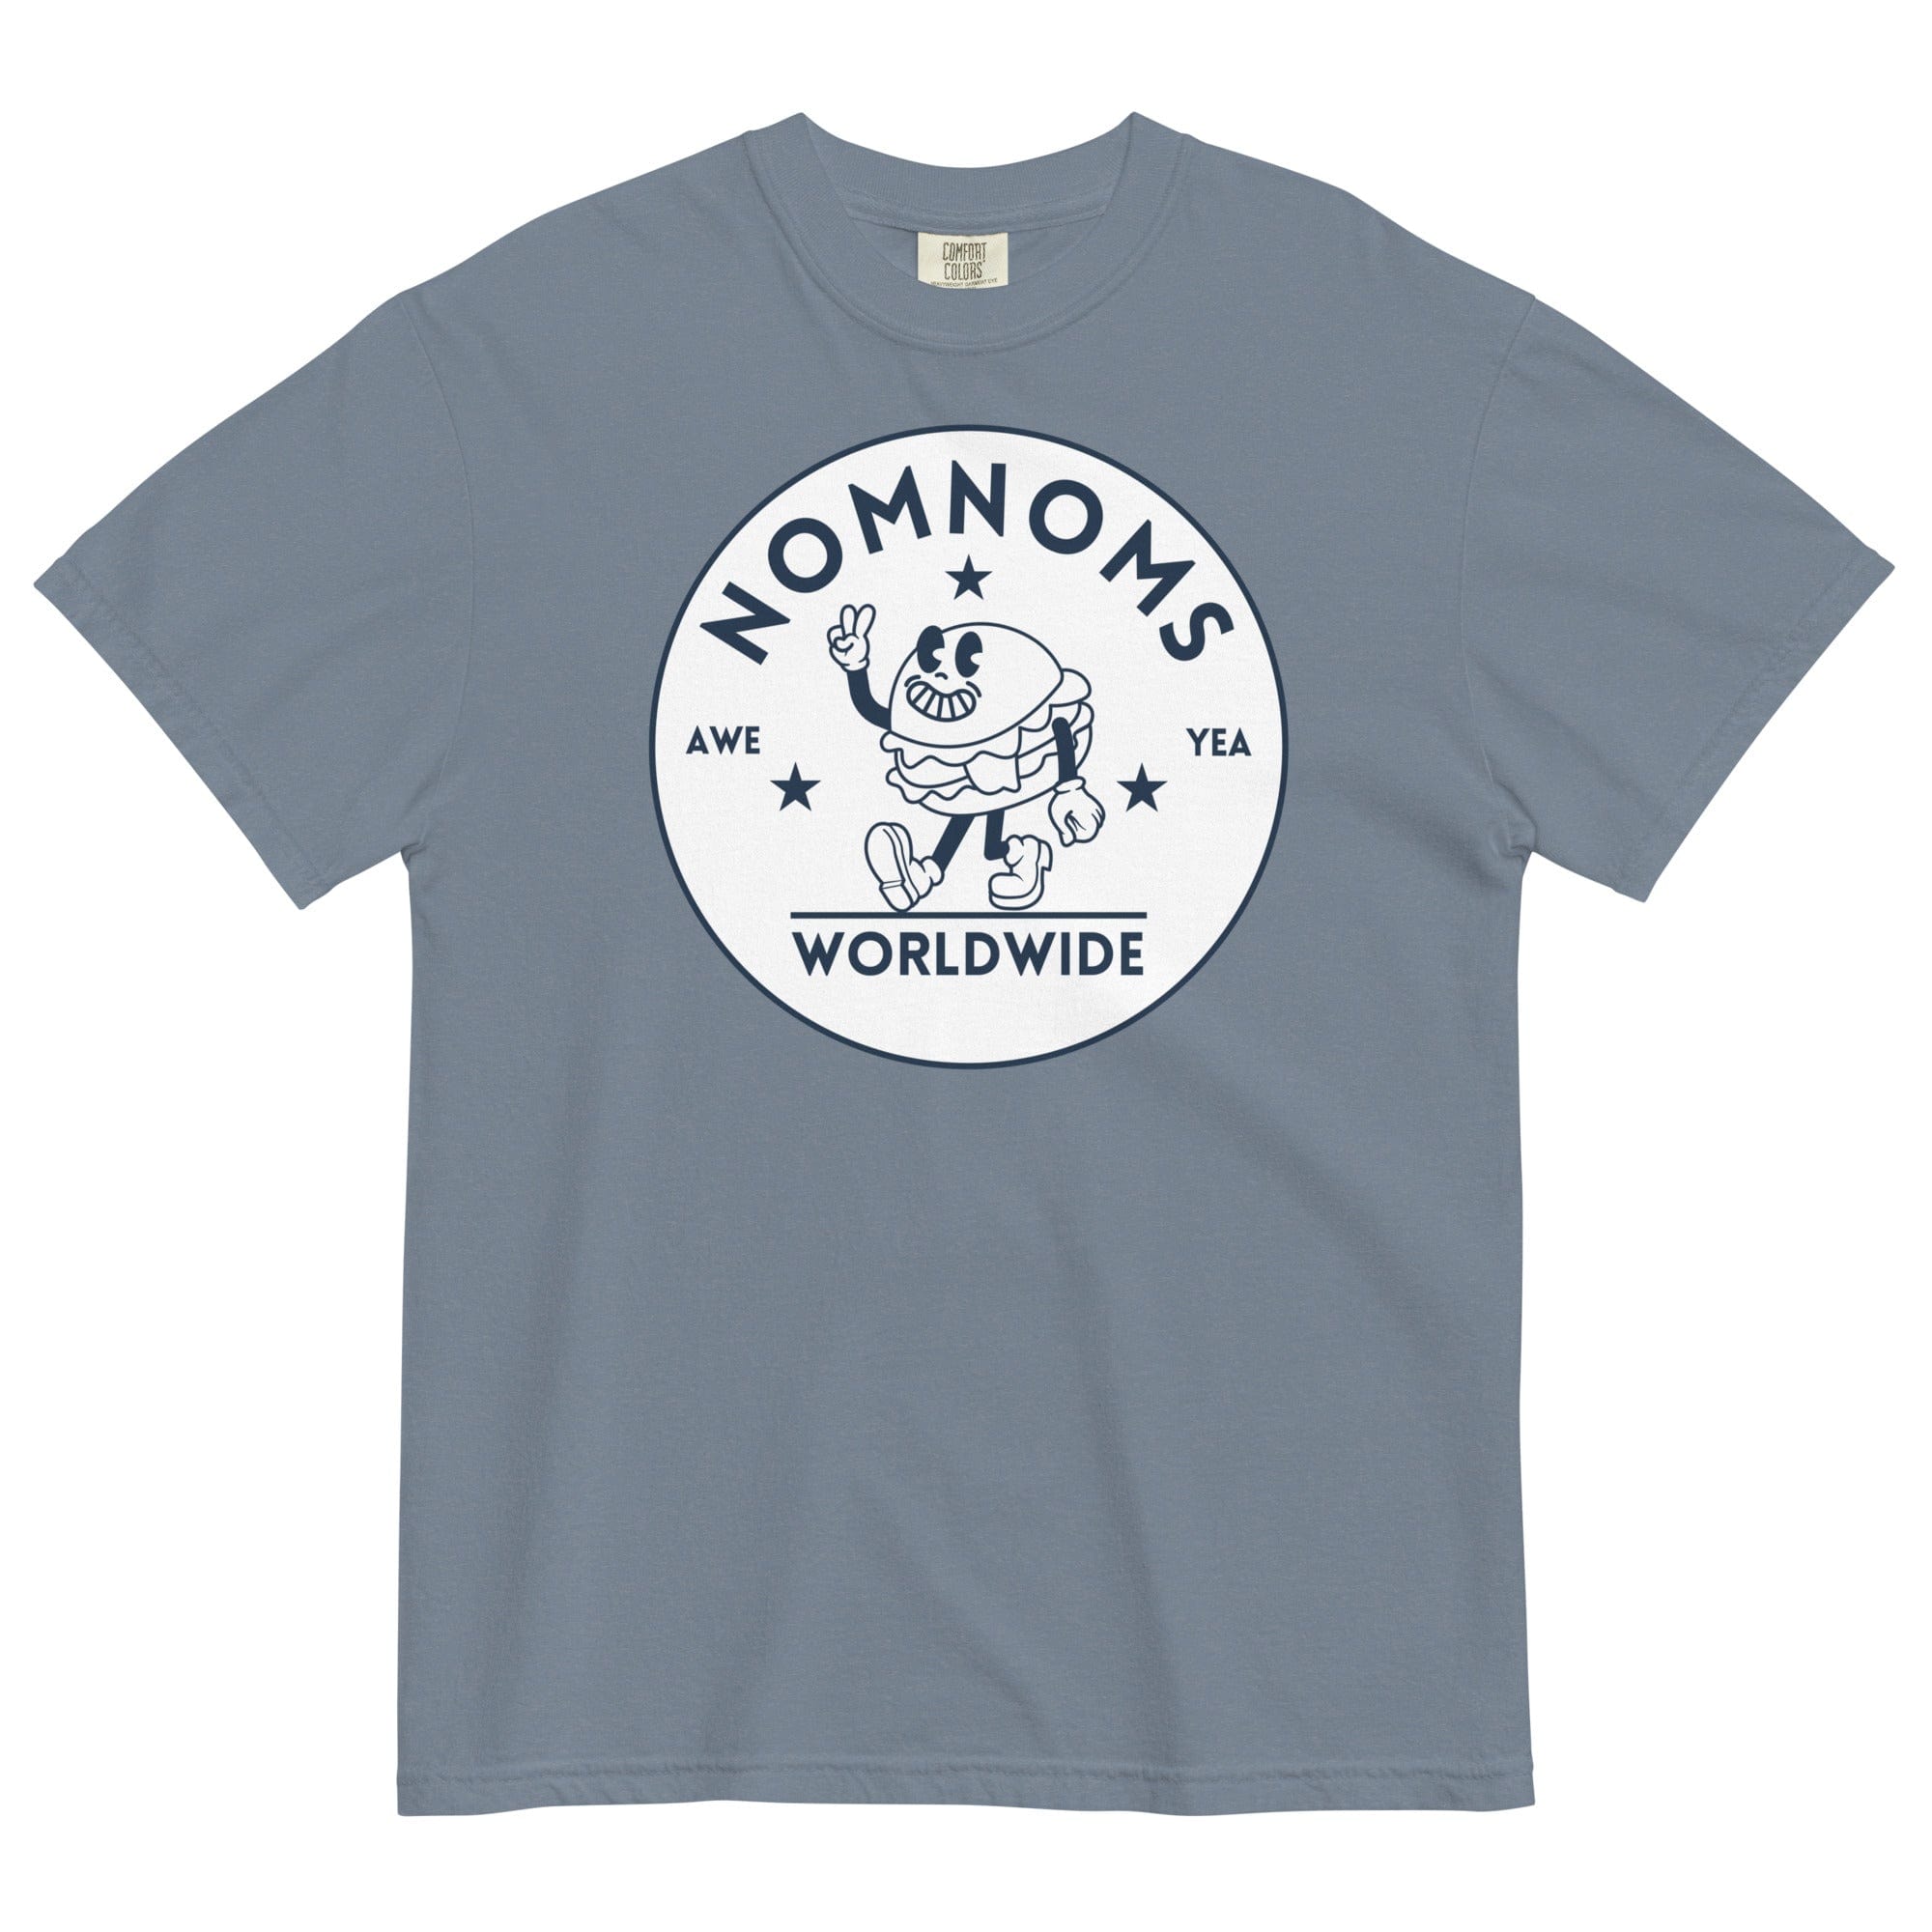 Nomnoms Worldwide Garment-dyed Heavyweight T-shirt Blue Jean / S Shirts & Tops Jolly & Goode